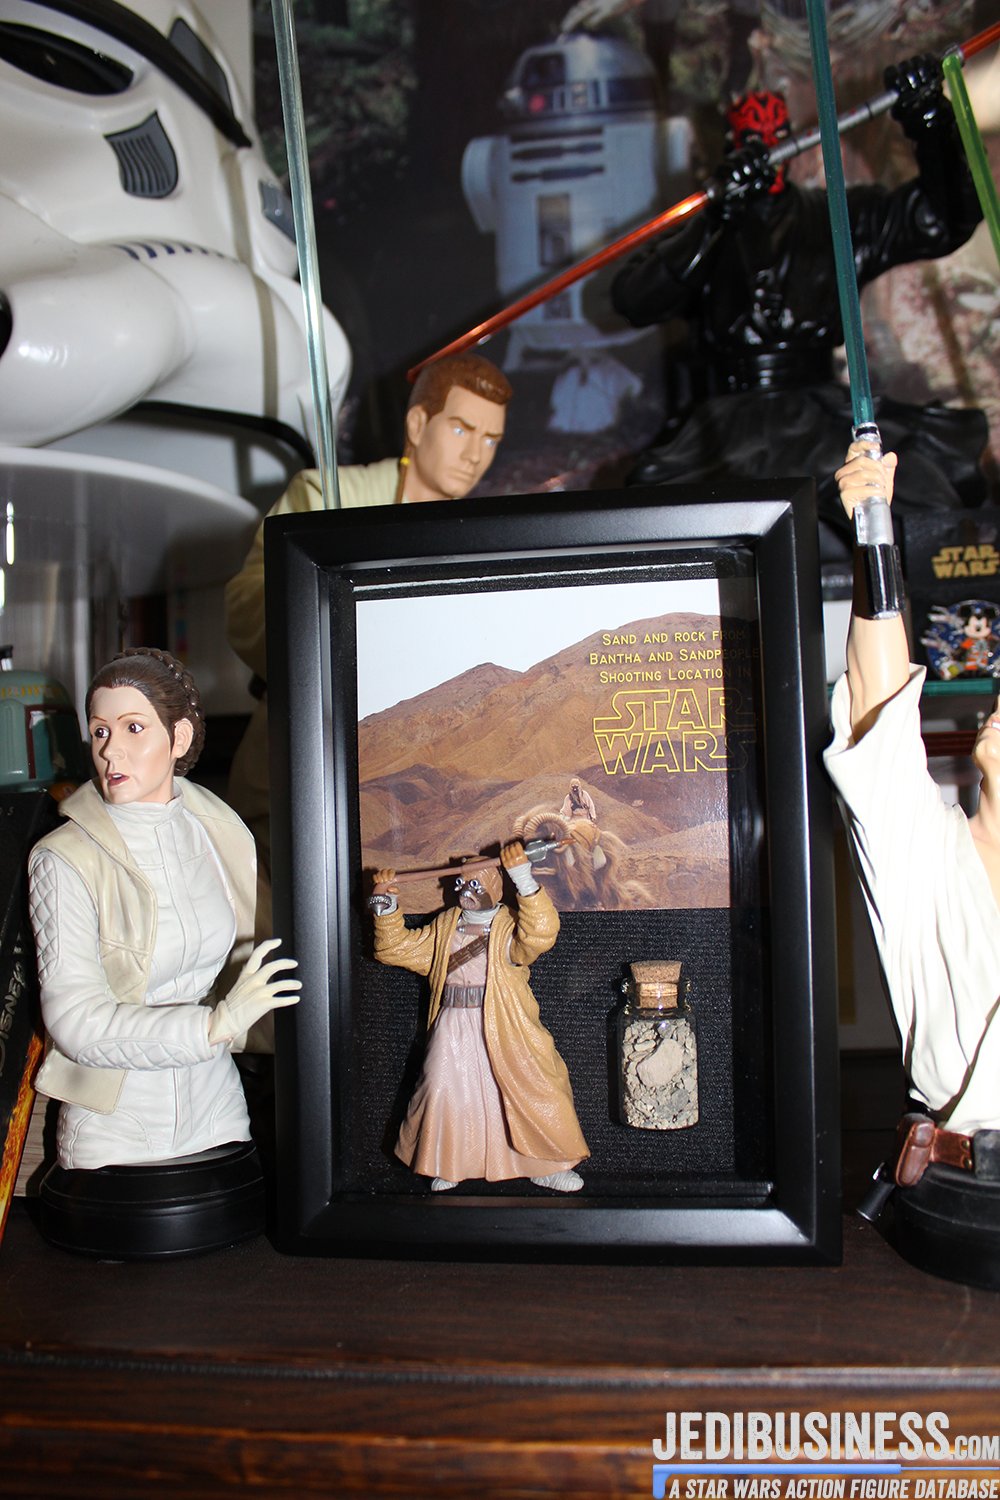 Lauren Bock's Star Wars Collection